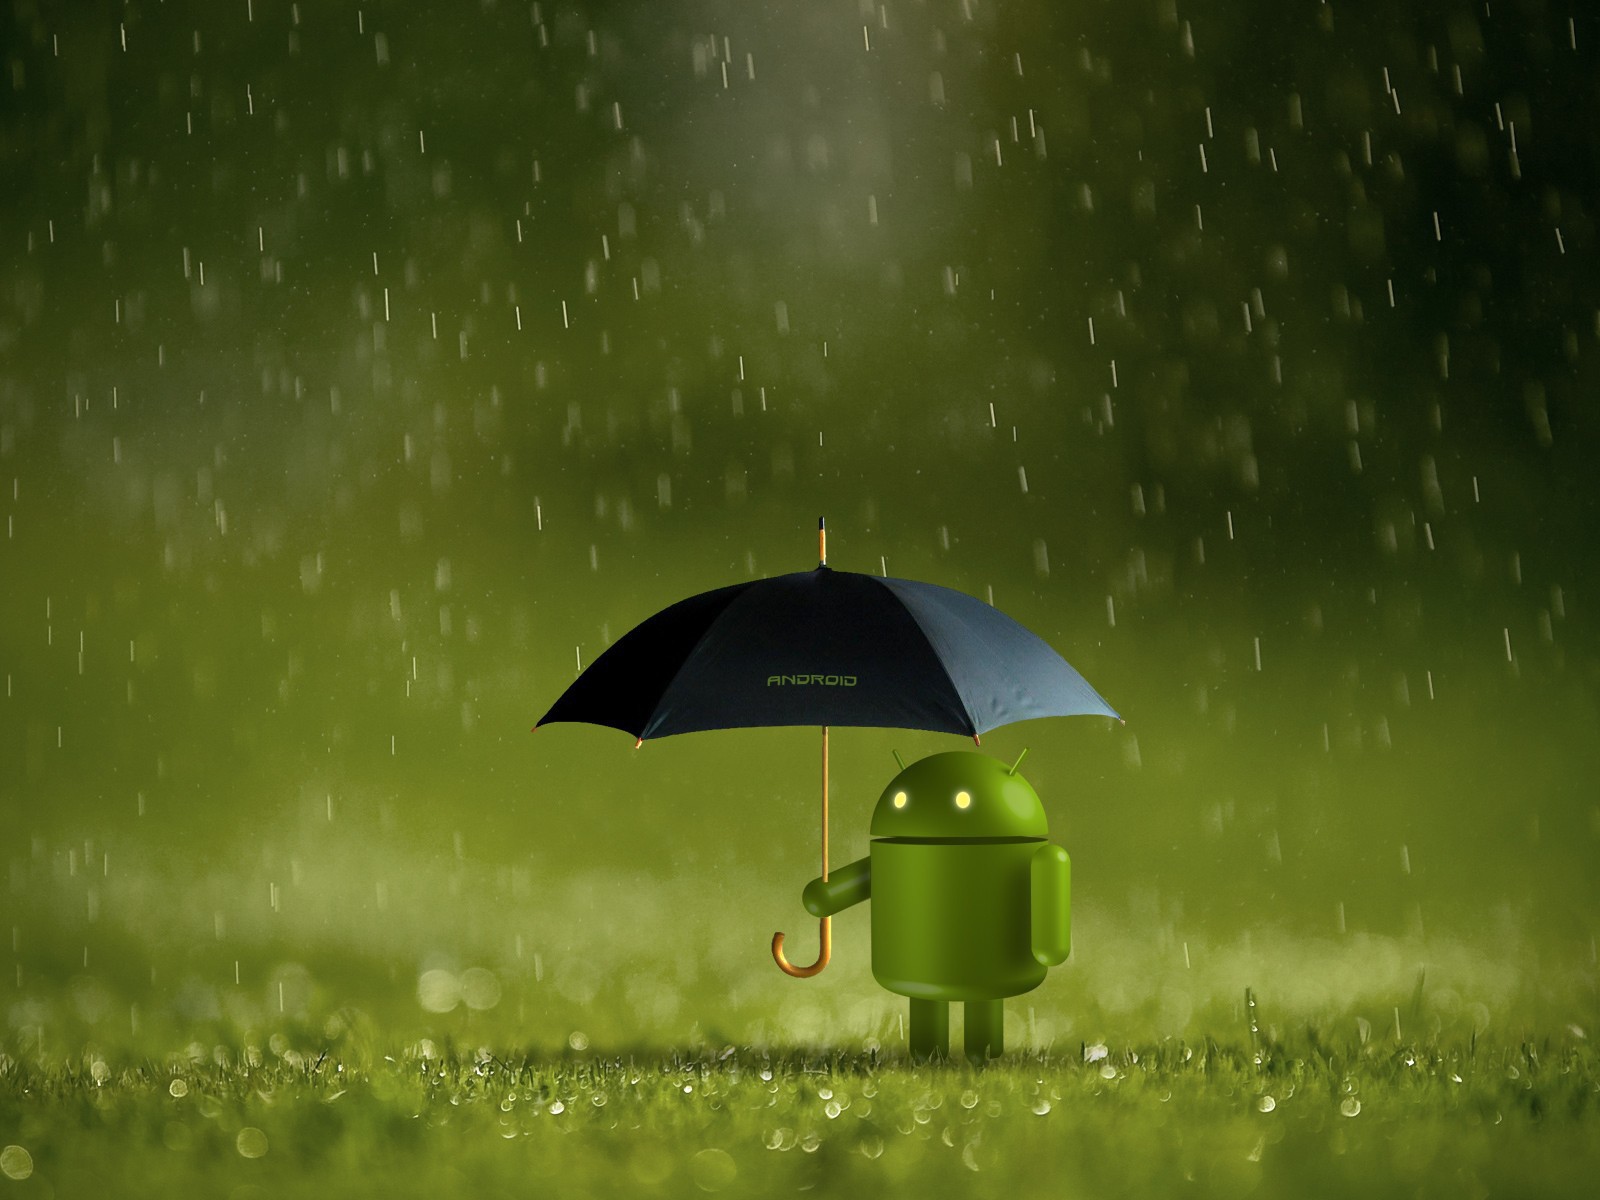 Андроид прячется от дождя под зонтом